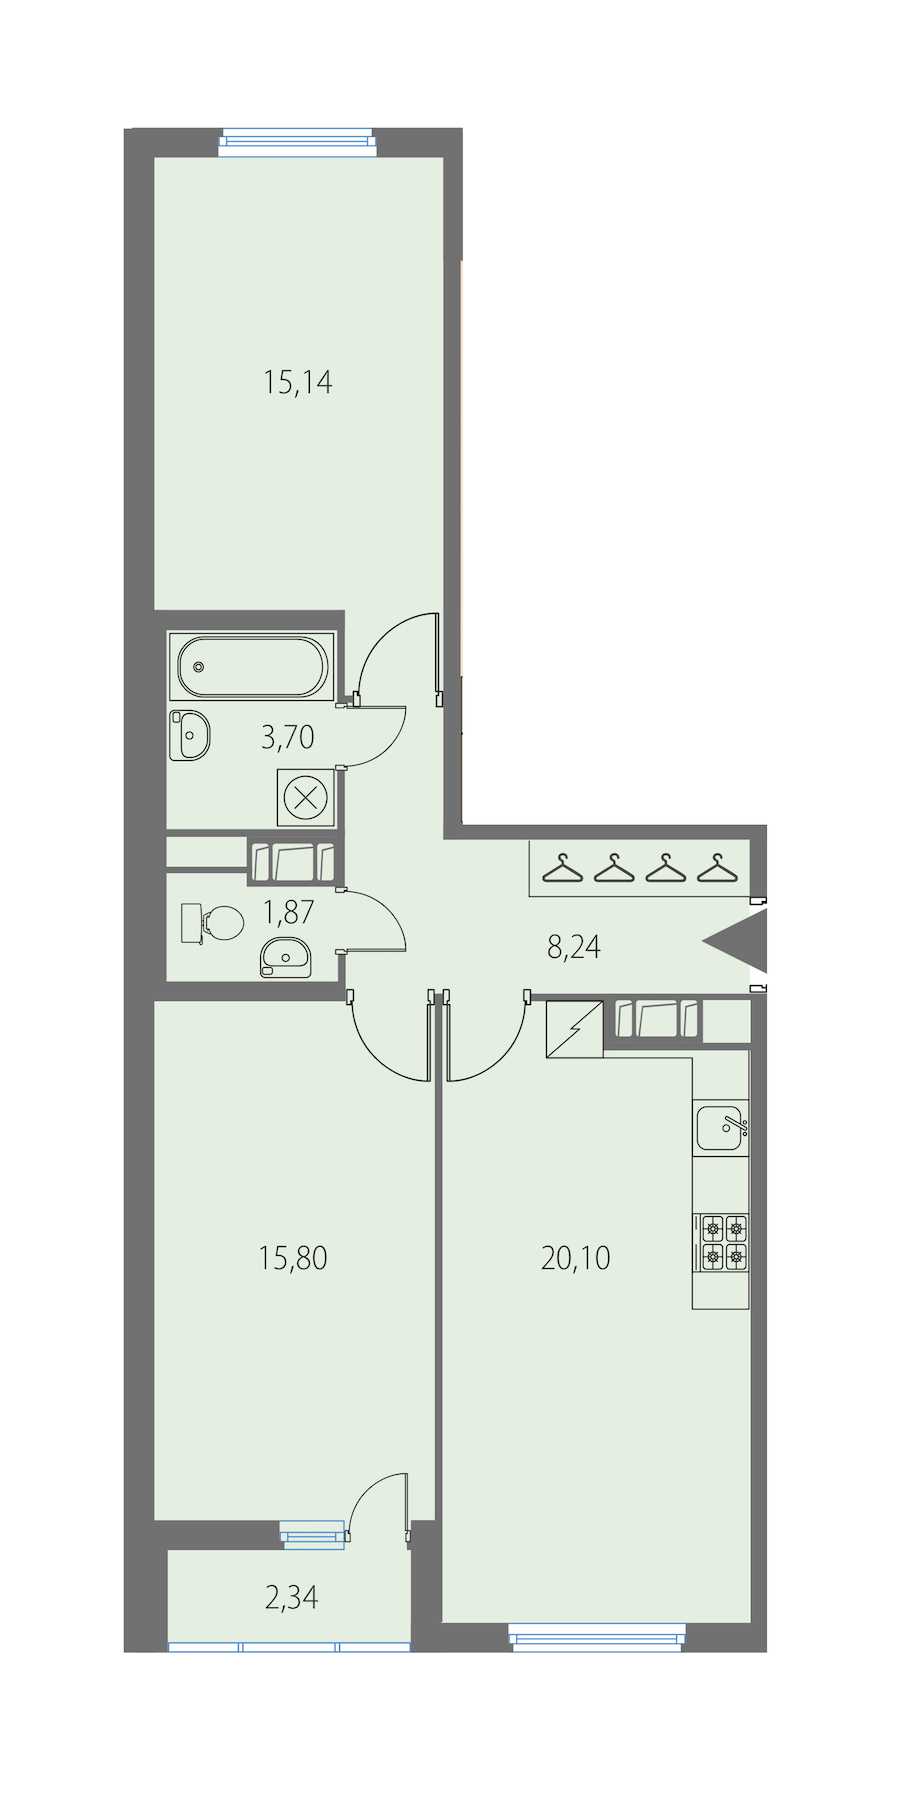 Двухкомнатная квартира в KVS: площадь 64.85 м2 , этаж: 5 – купить в Санкт-Петербурге